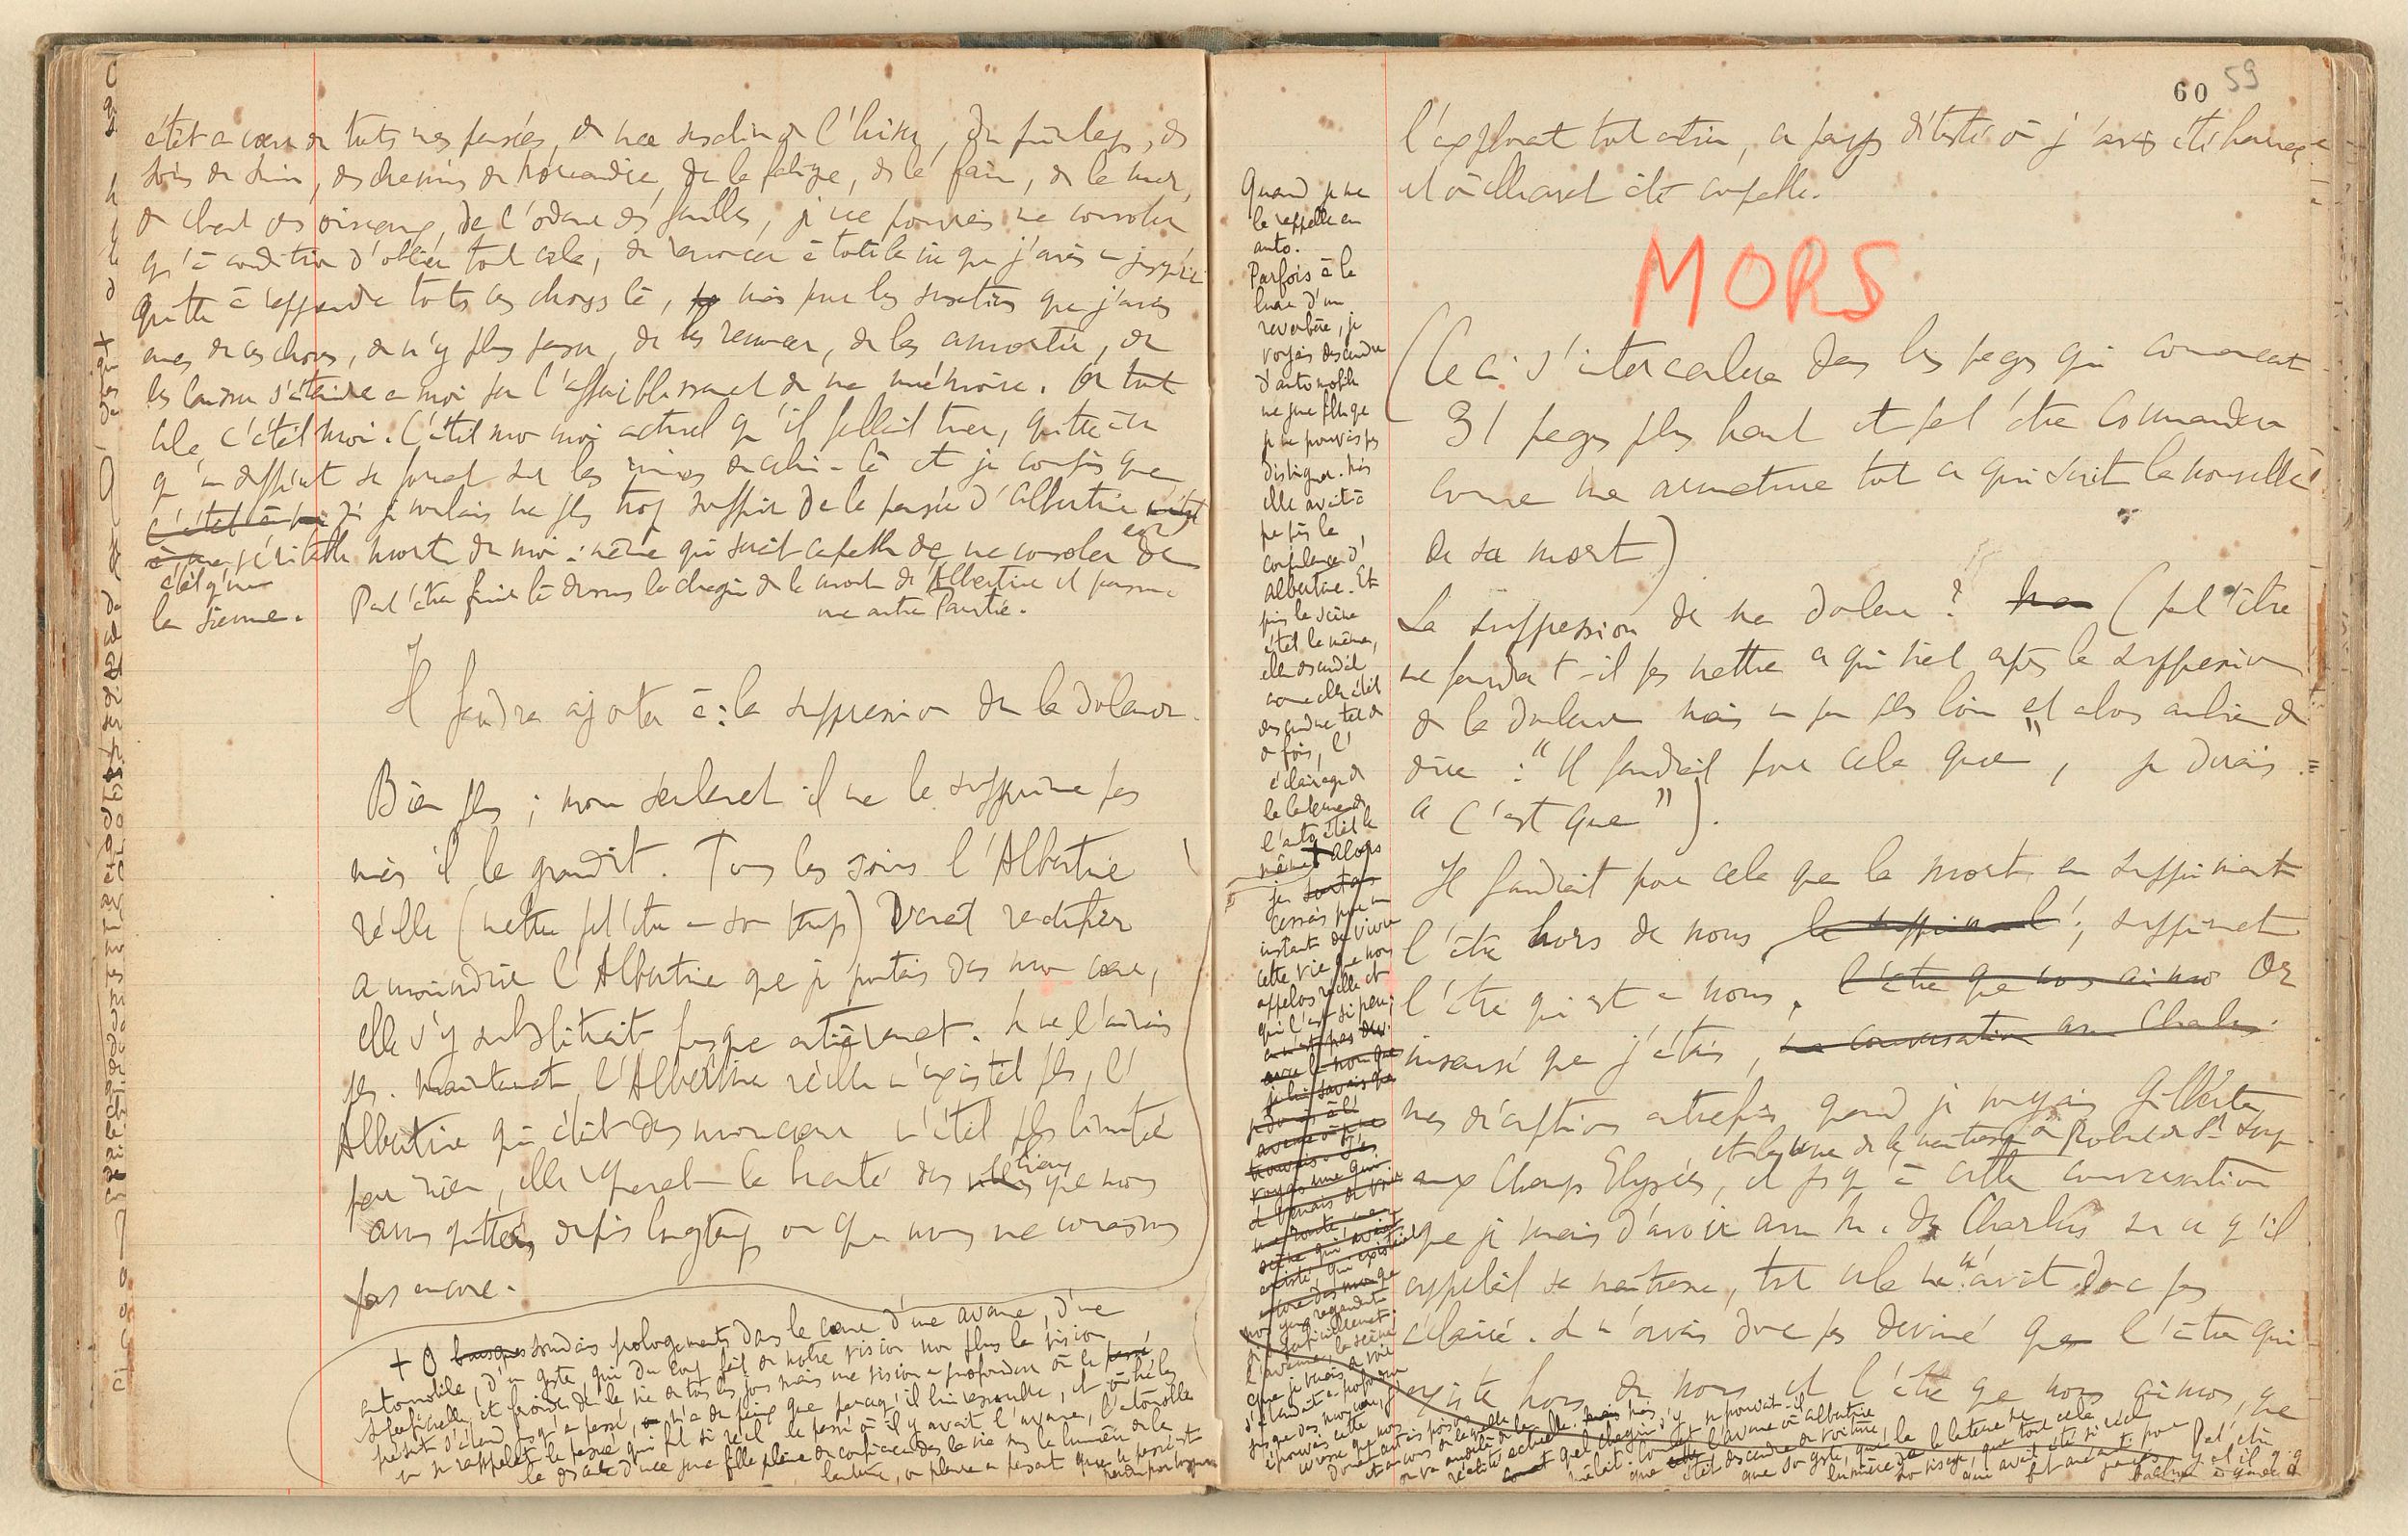 Marcel Proust. À la recherche du temps perdu. Manuscrits autographes. Soixante-deux cahiers de brouillons comportant des ébauches des différentes parties de la Recherche à divers stades de leur rédaction. 